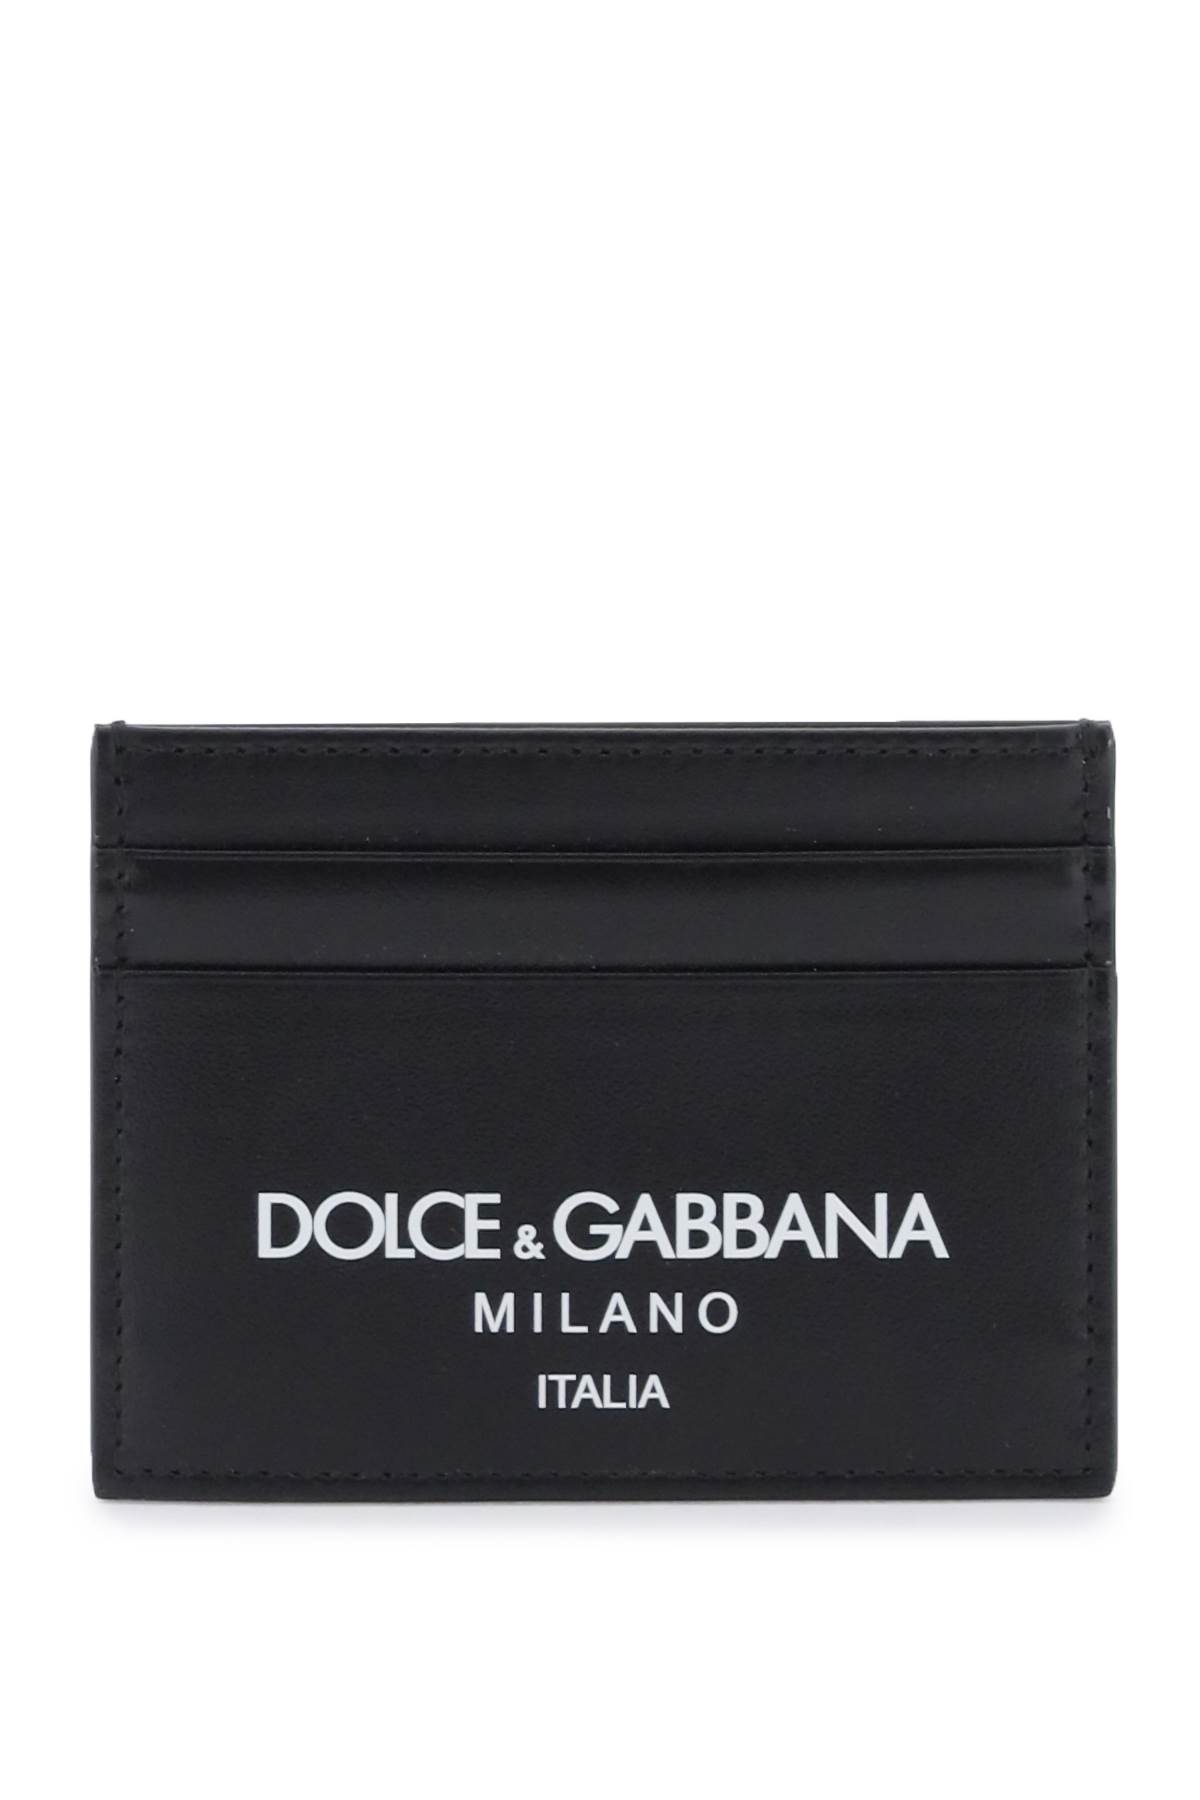 Dolce & Gabbana Logo Leather Cardholder In Dg Milano Italia (black)